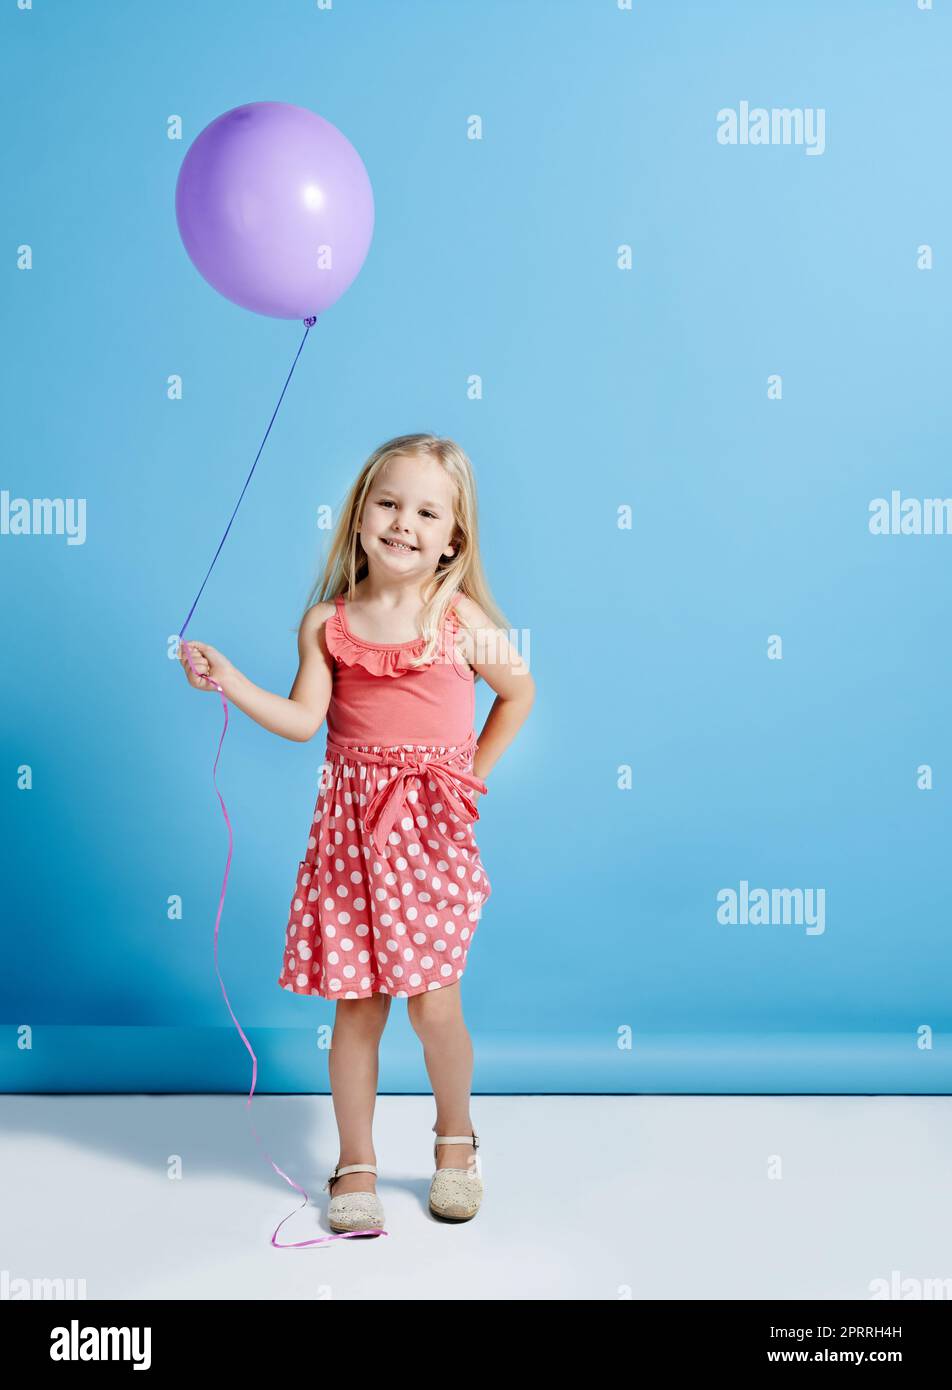 Niemand kann mit einem Ballon entjubelt werden. Ein niedliches kleines Mädchen hält einen Ballon über einem blauen Hintergrund. Stockfoto